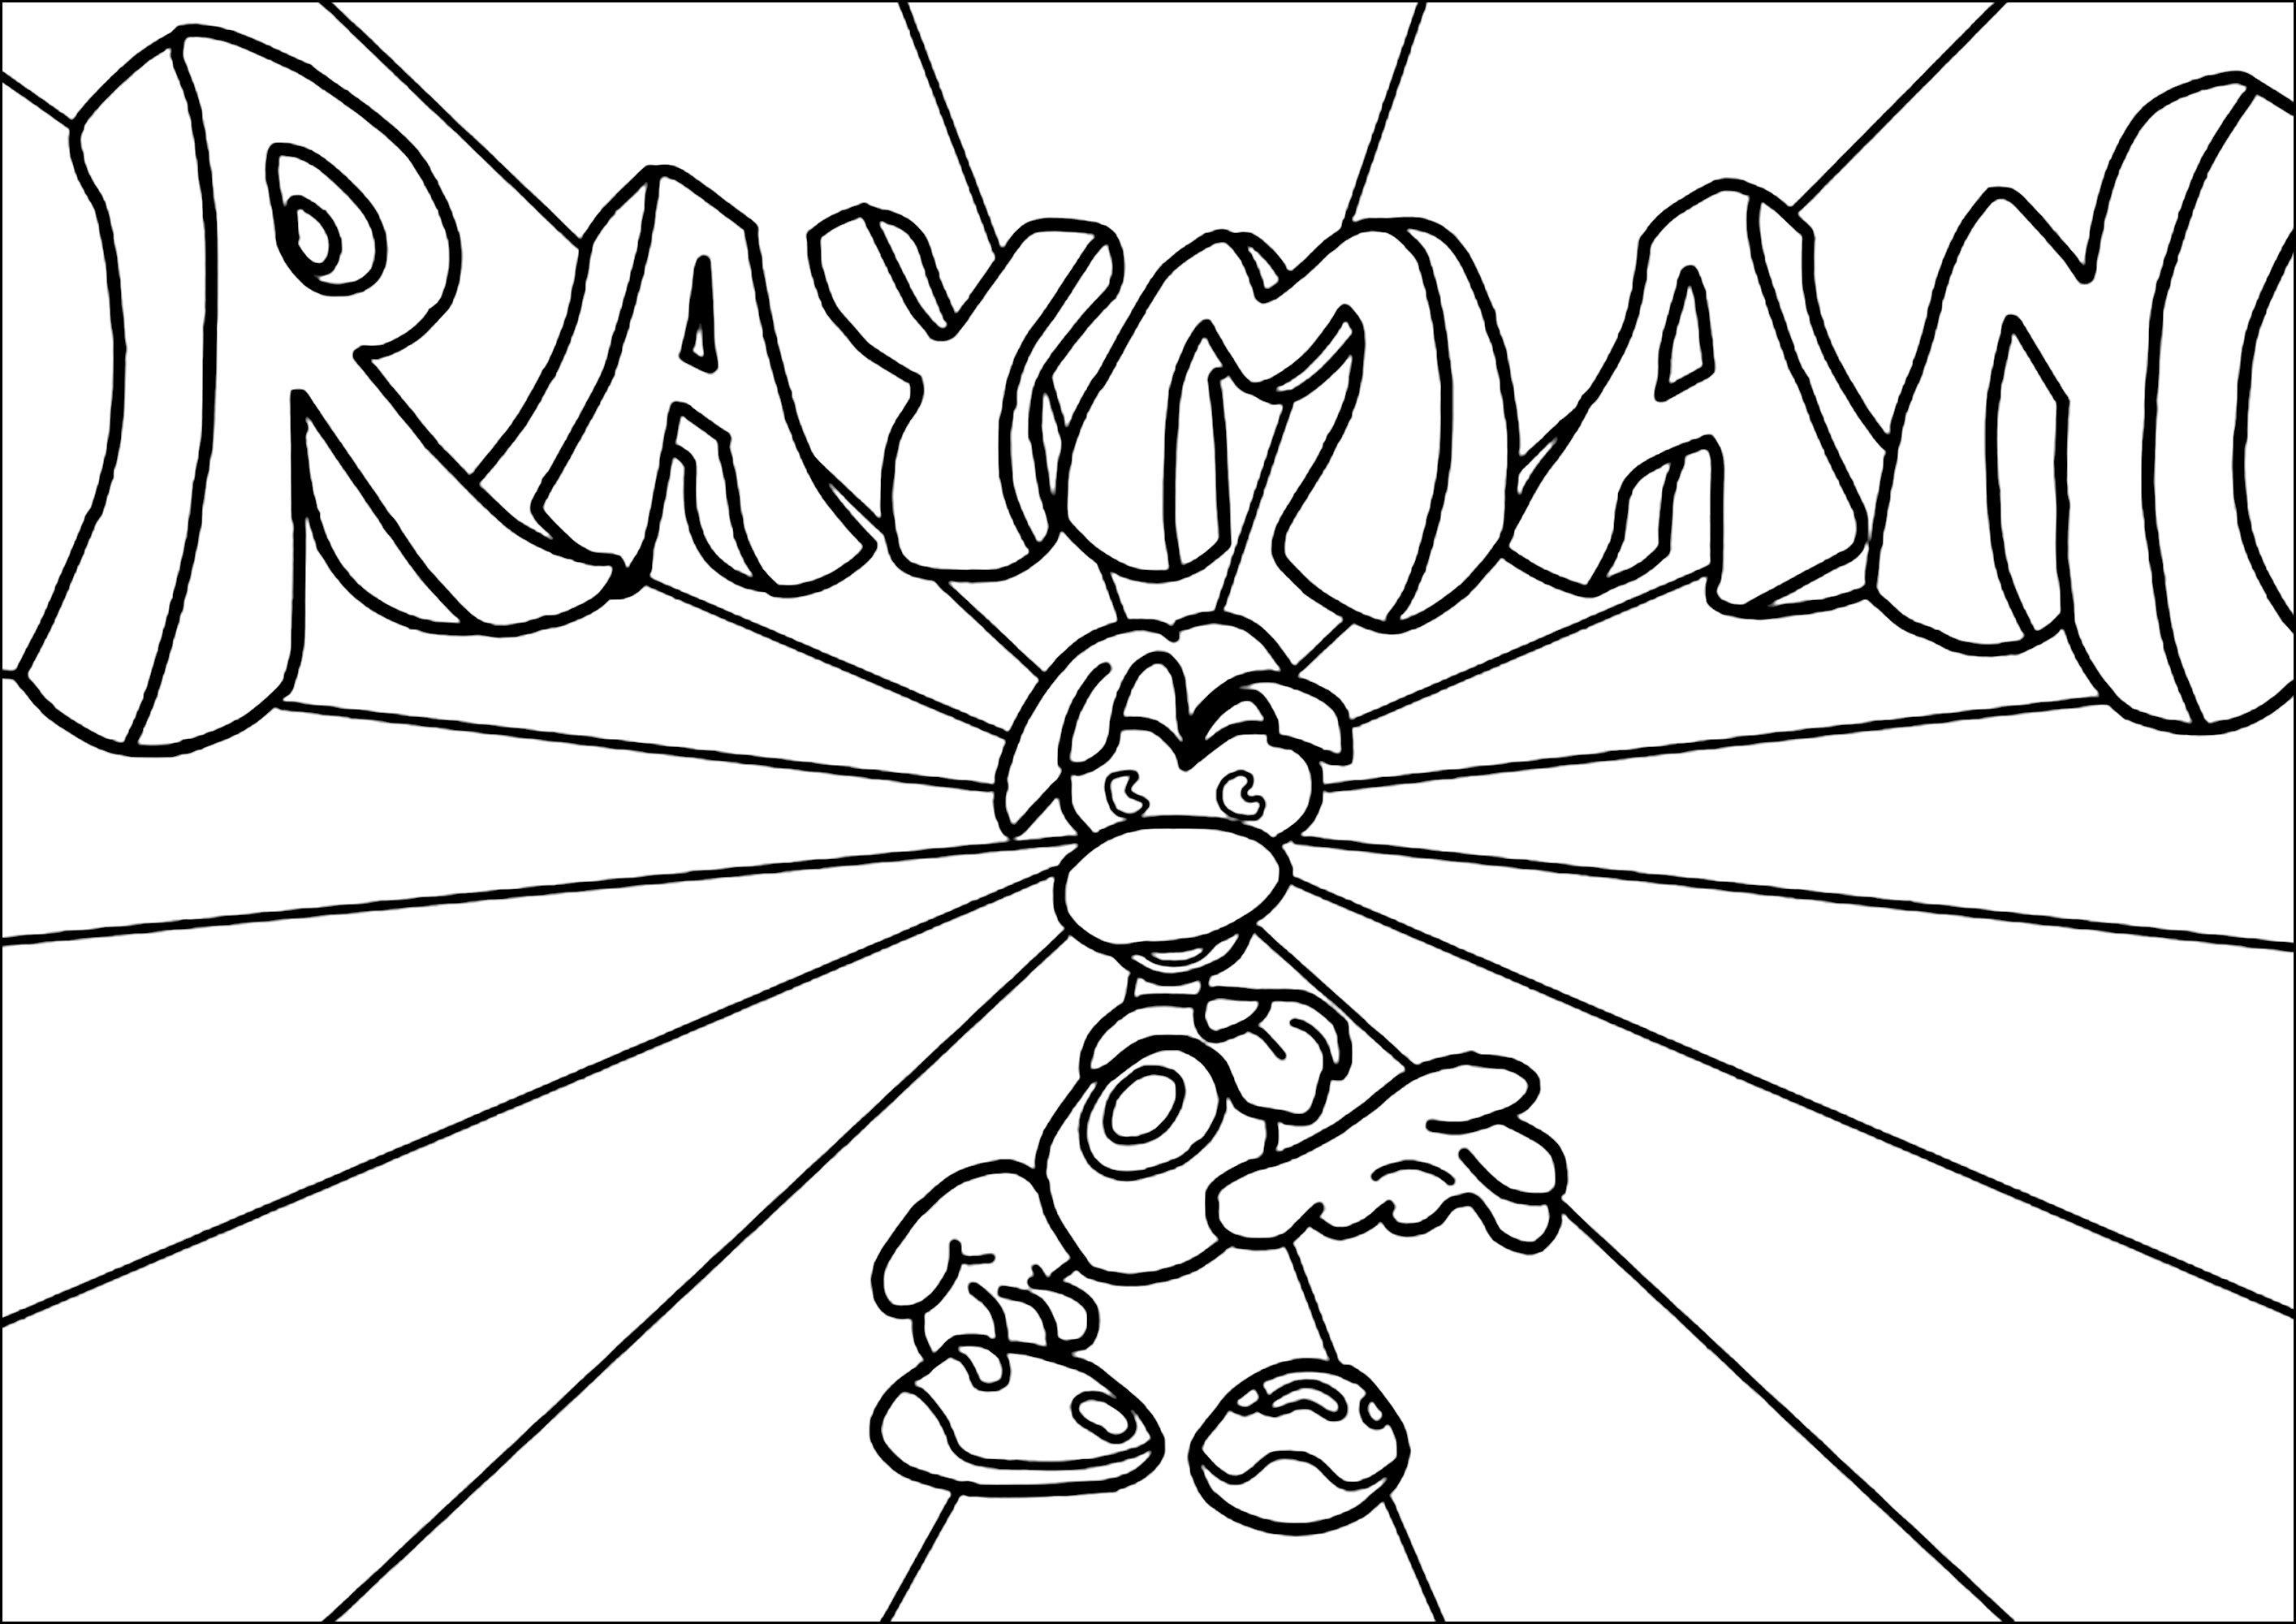 Personaje de Rayman con logotipo de fondo